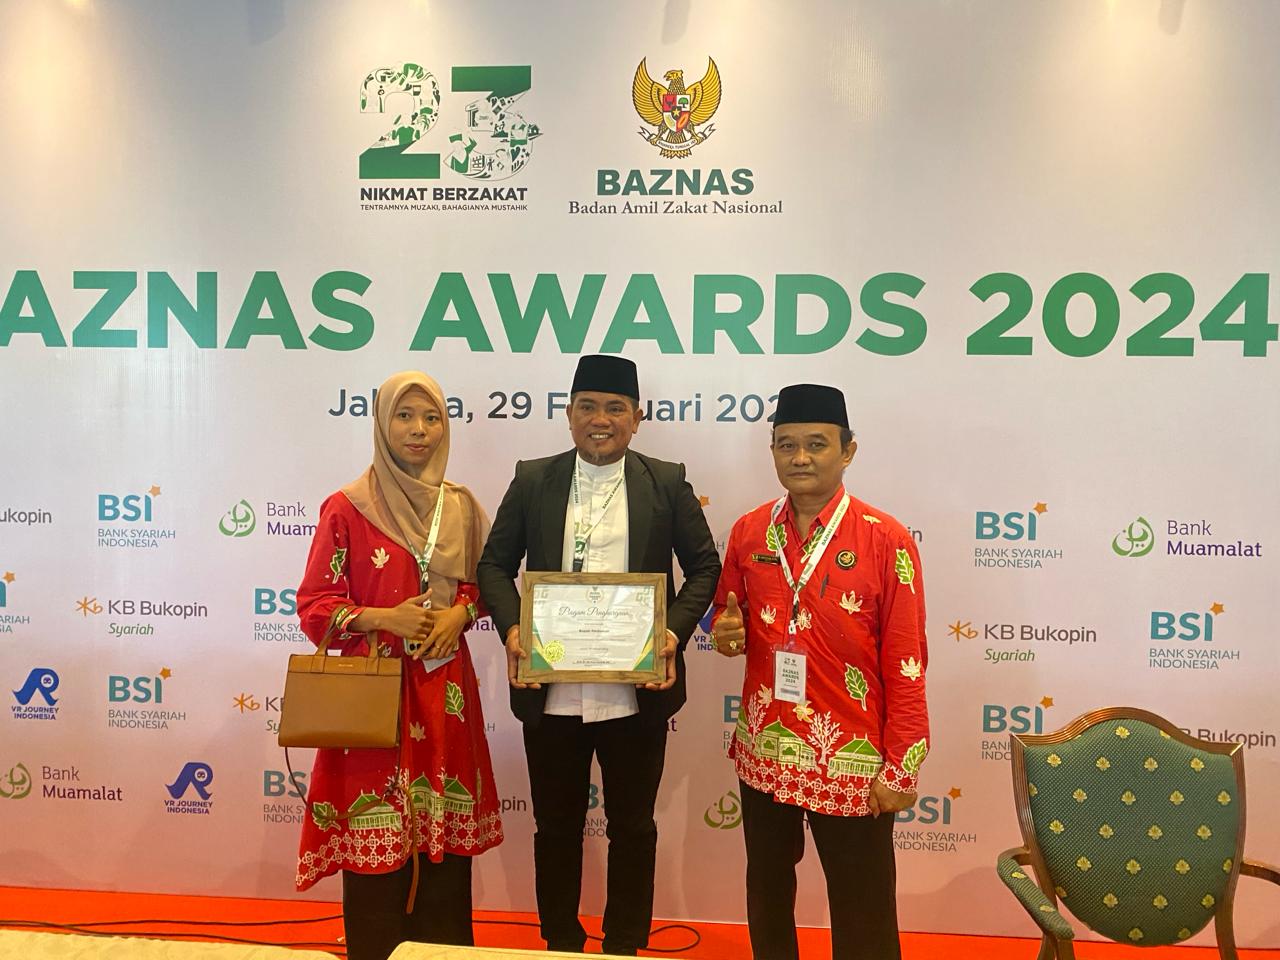 Bupati Pelalawan, Zukri meraih penghargaan pendukung pengelolaan zakat terbaik di Baznas Award 2024 (foto/ist)